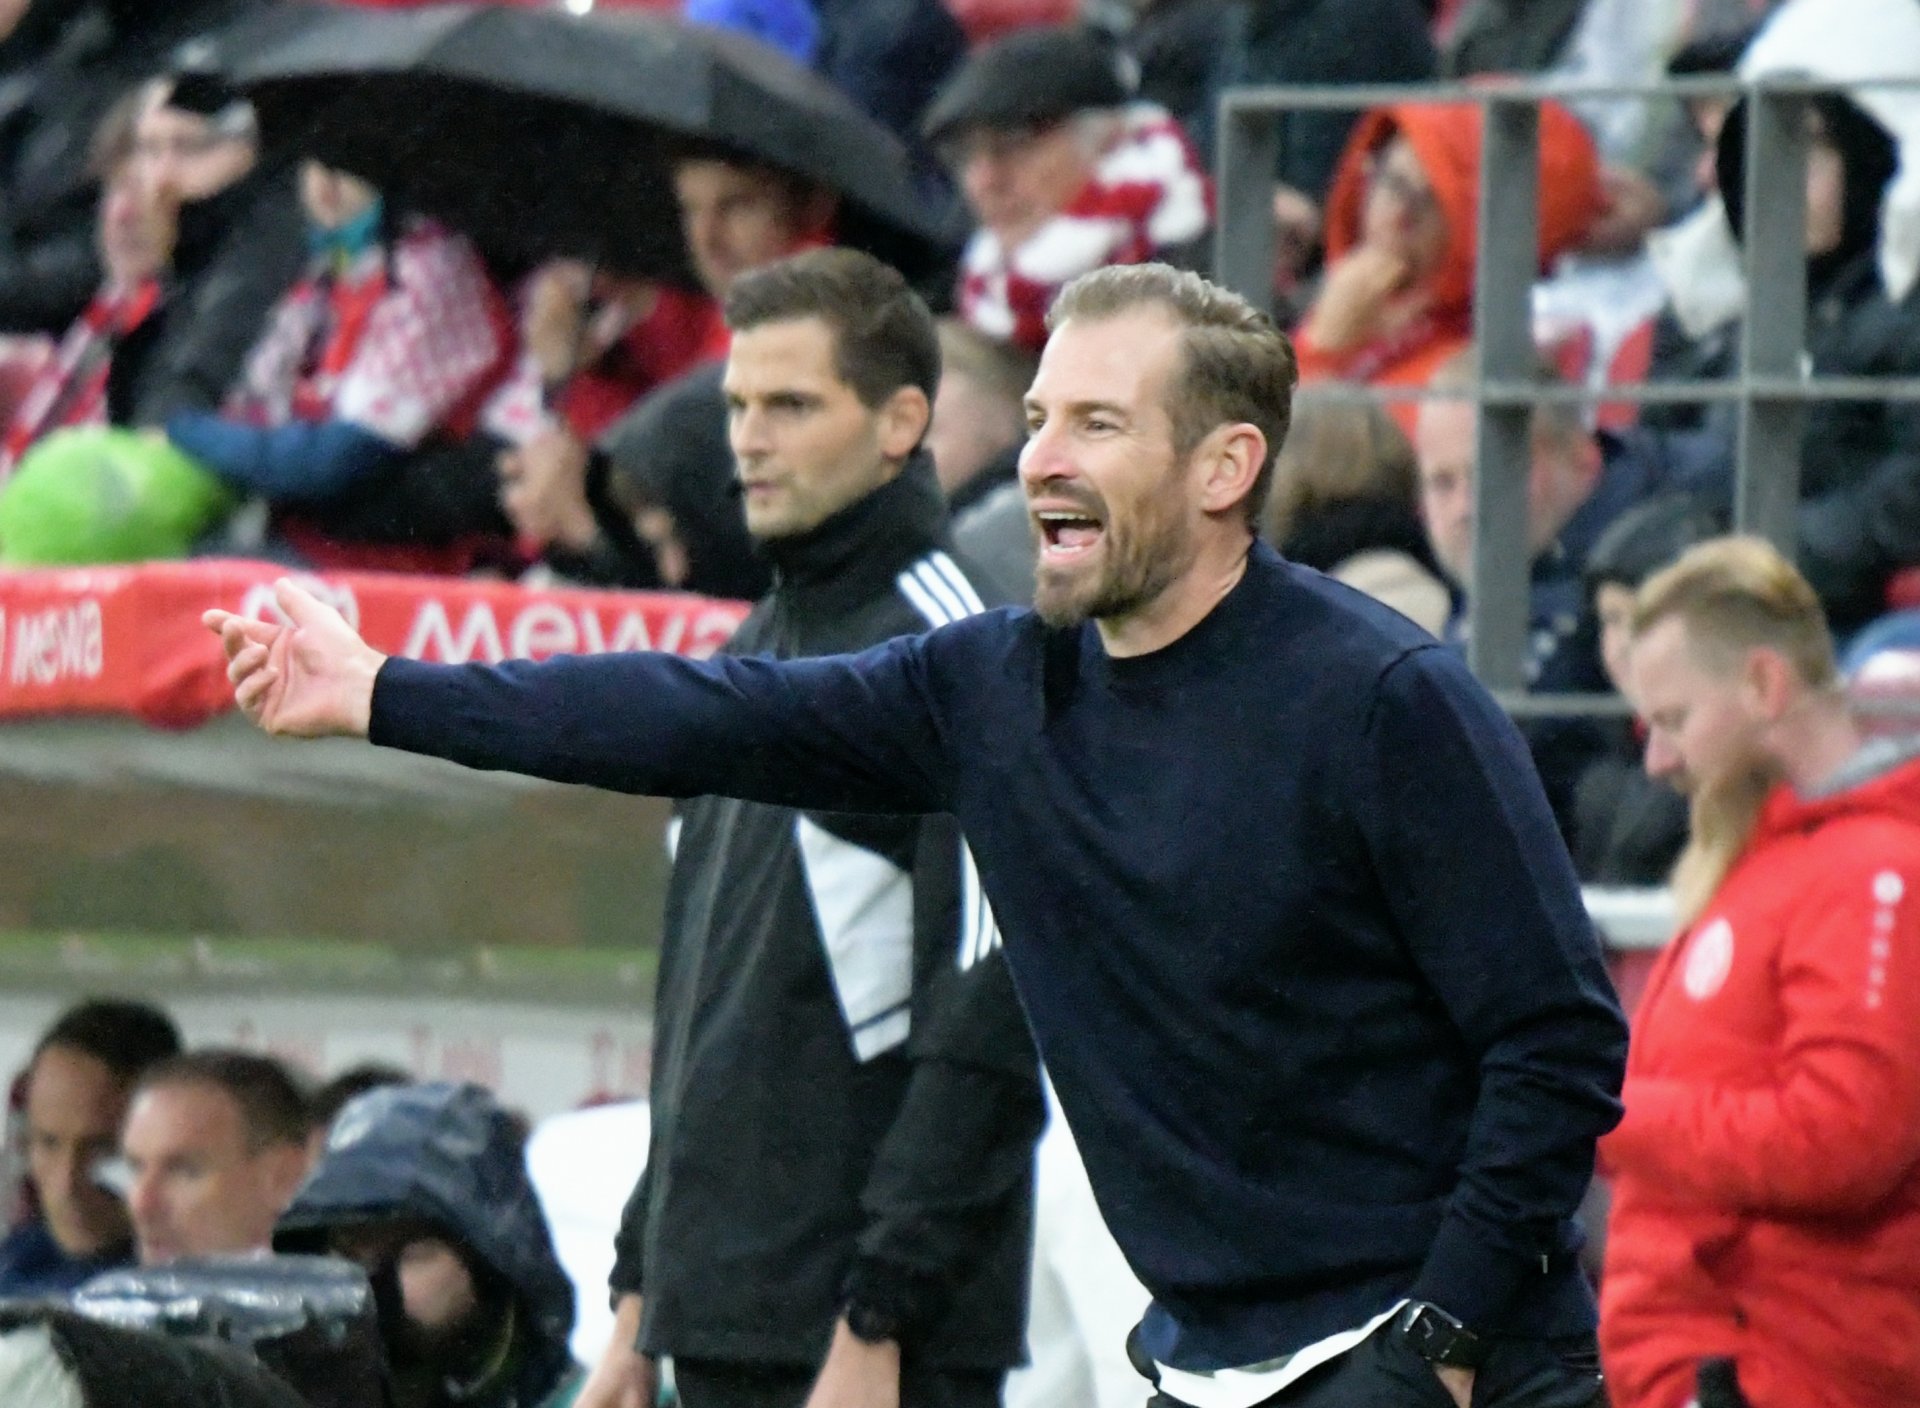 Eben noch bei der U23, jetzt in der Bundesliga, coachte Jan Siewert, als gäbe es kein Morgen.